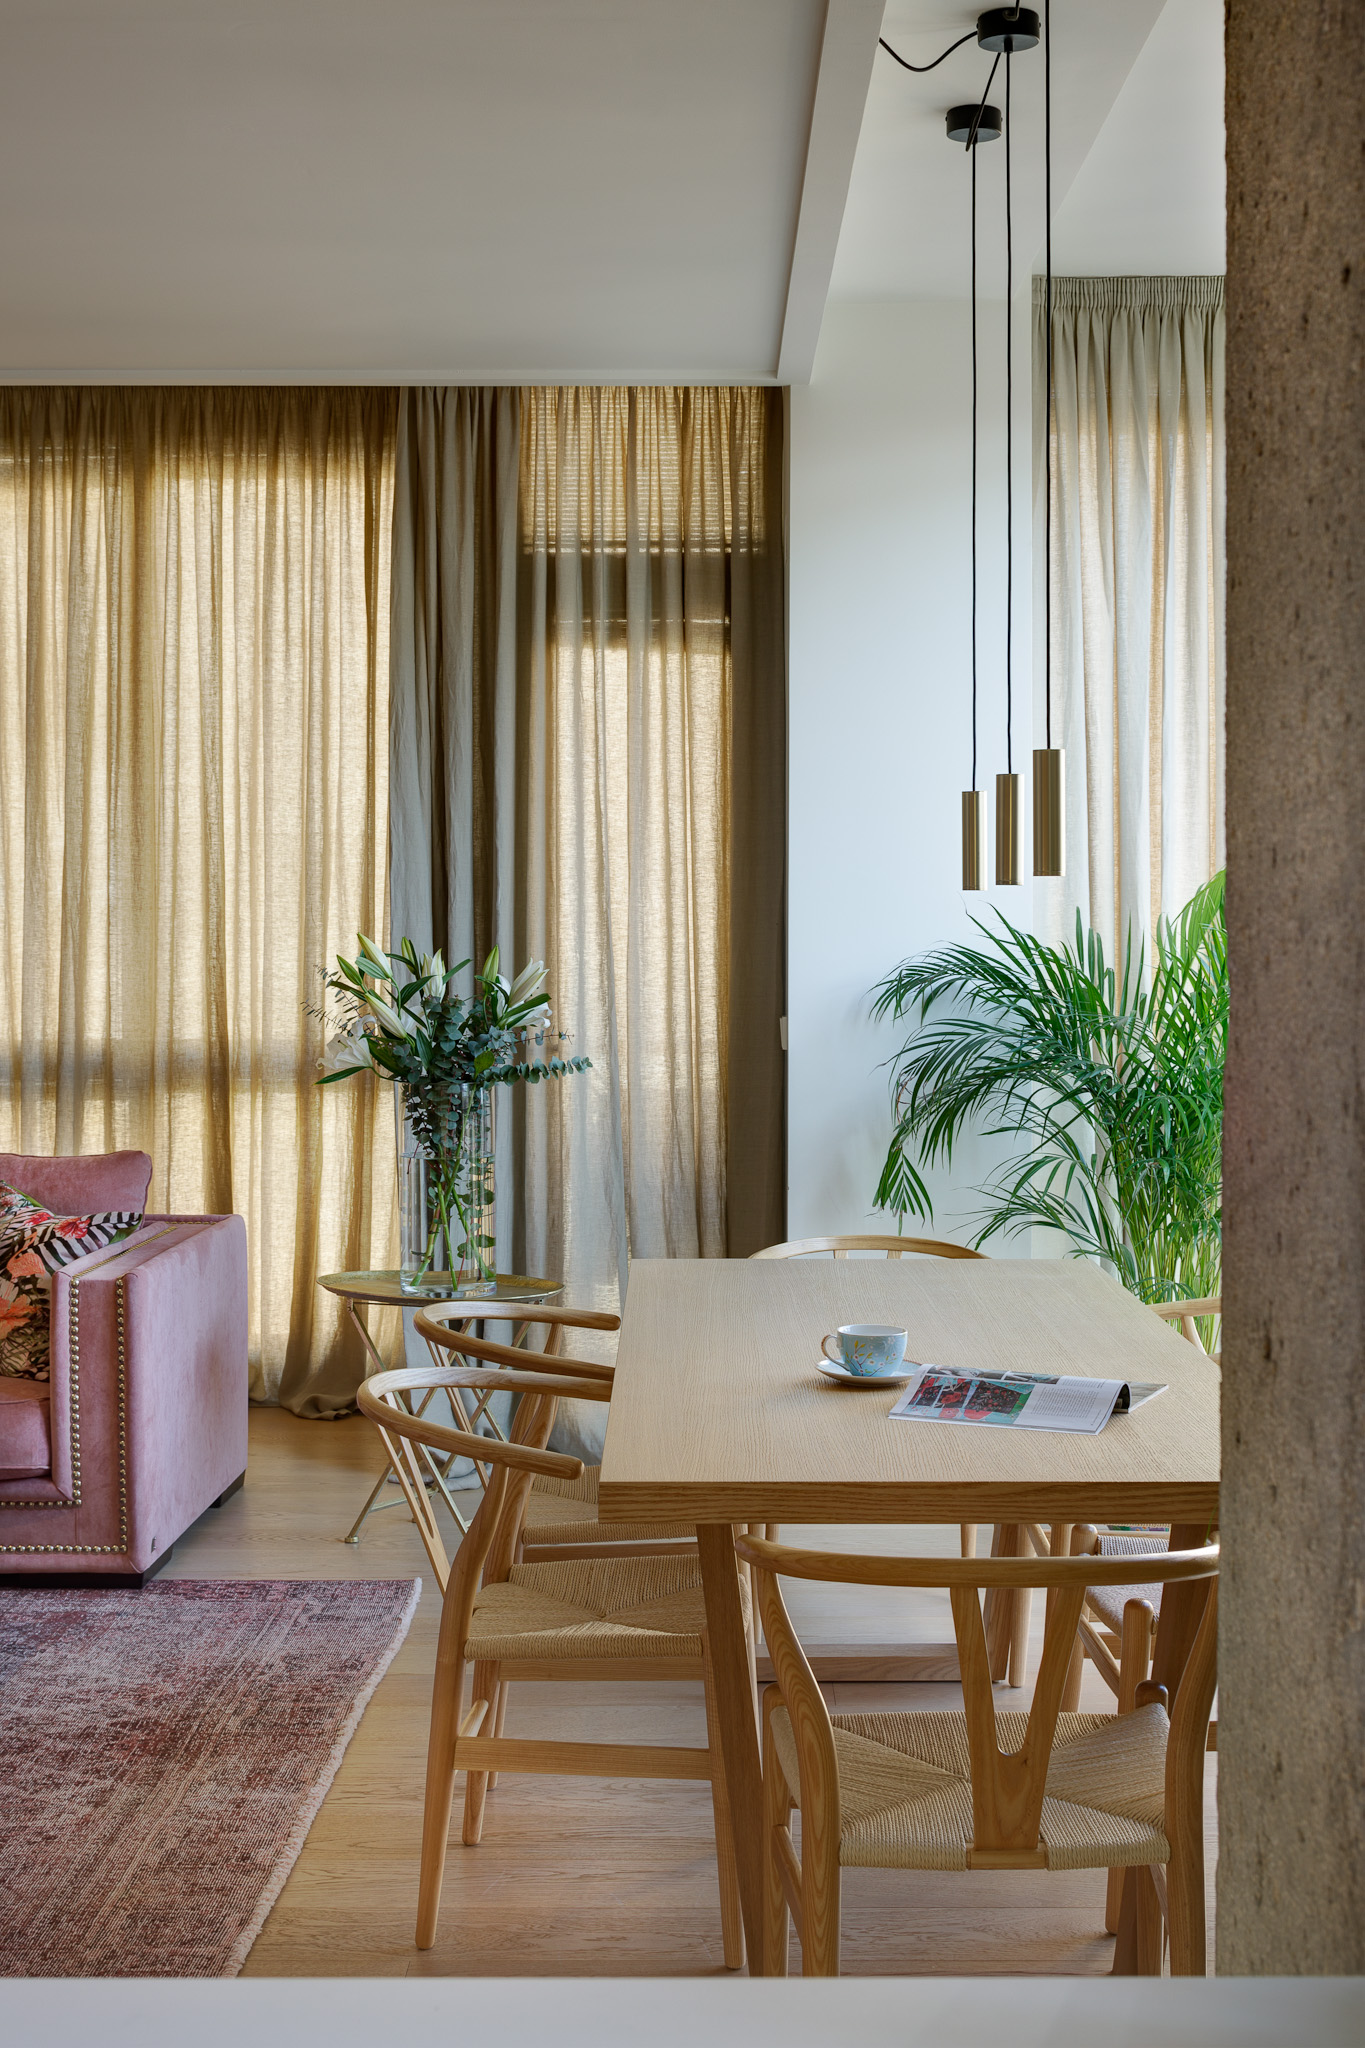 Reforma de vivienda con redistribución de espacios y decoración con materiales nobles y colores cálidos